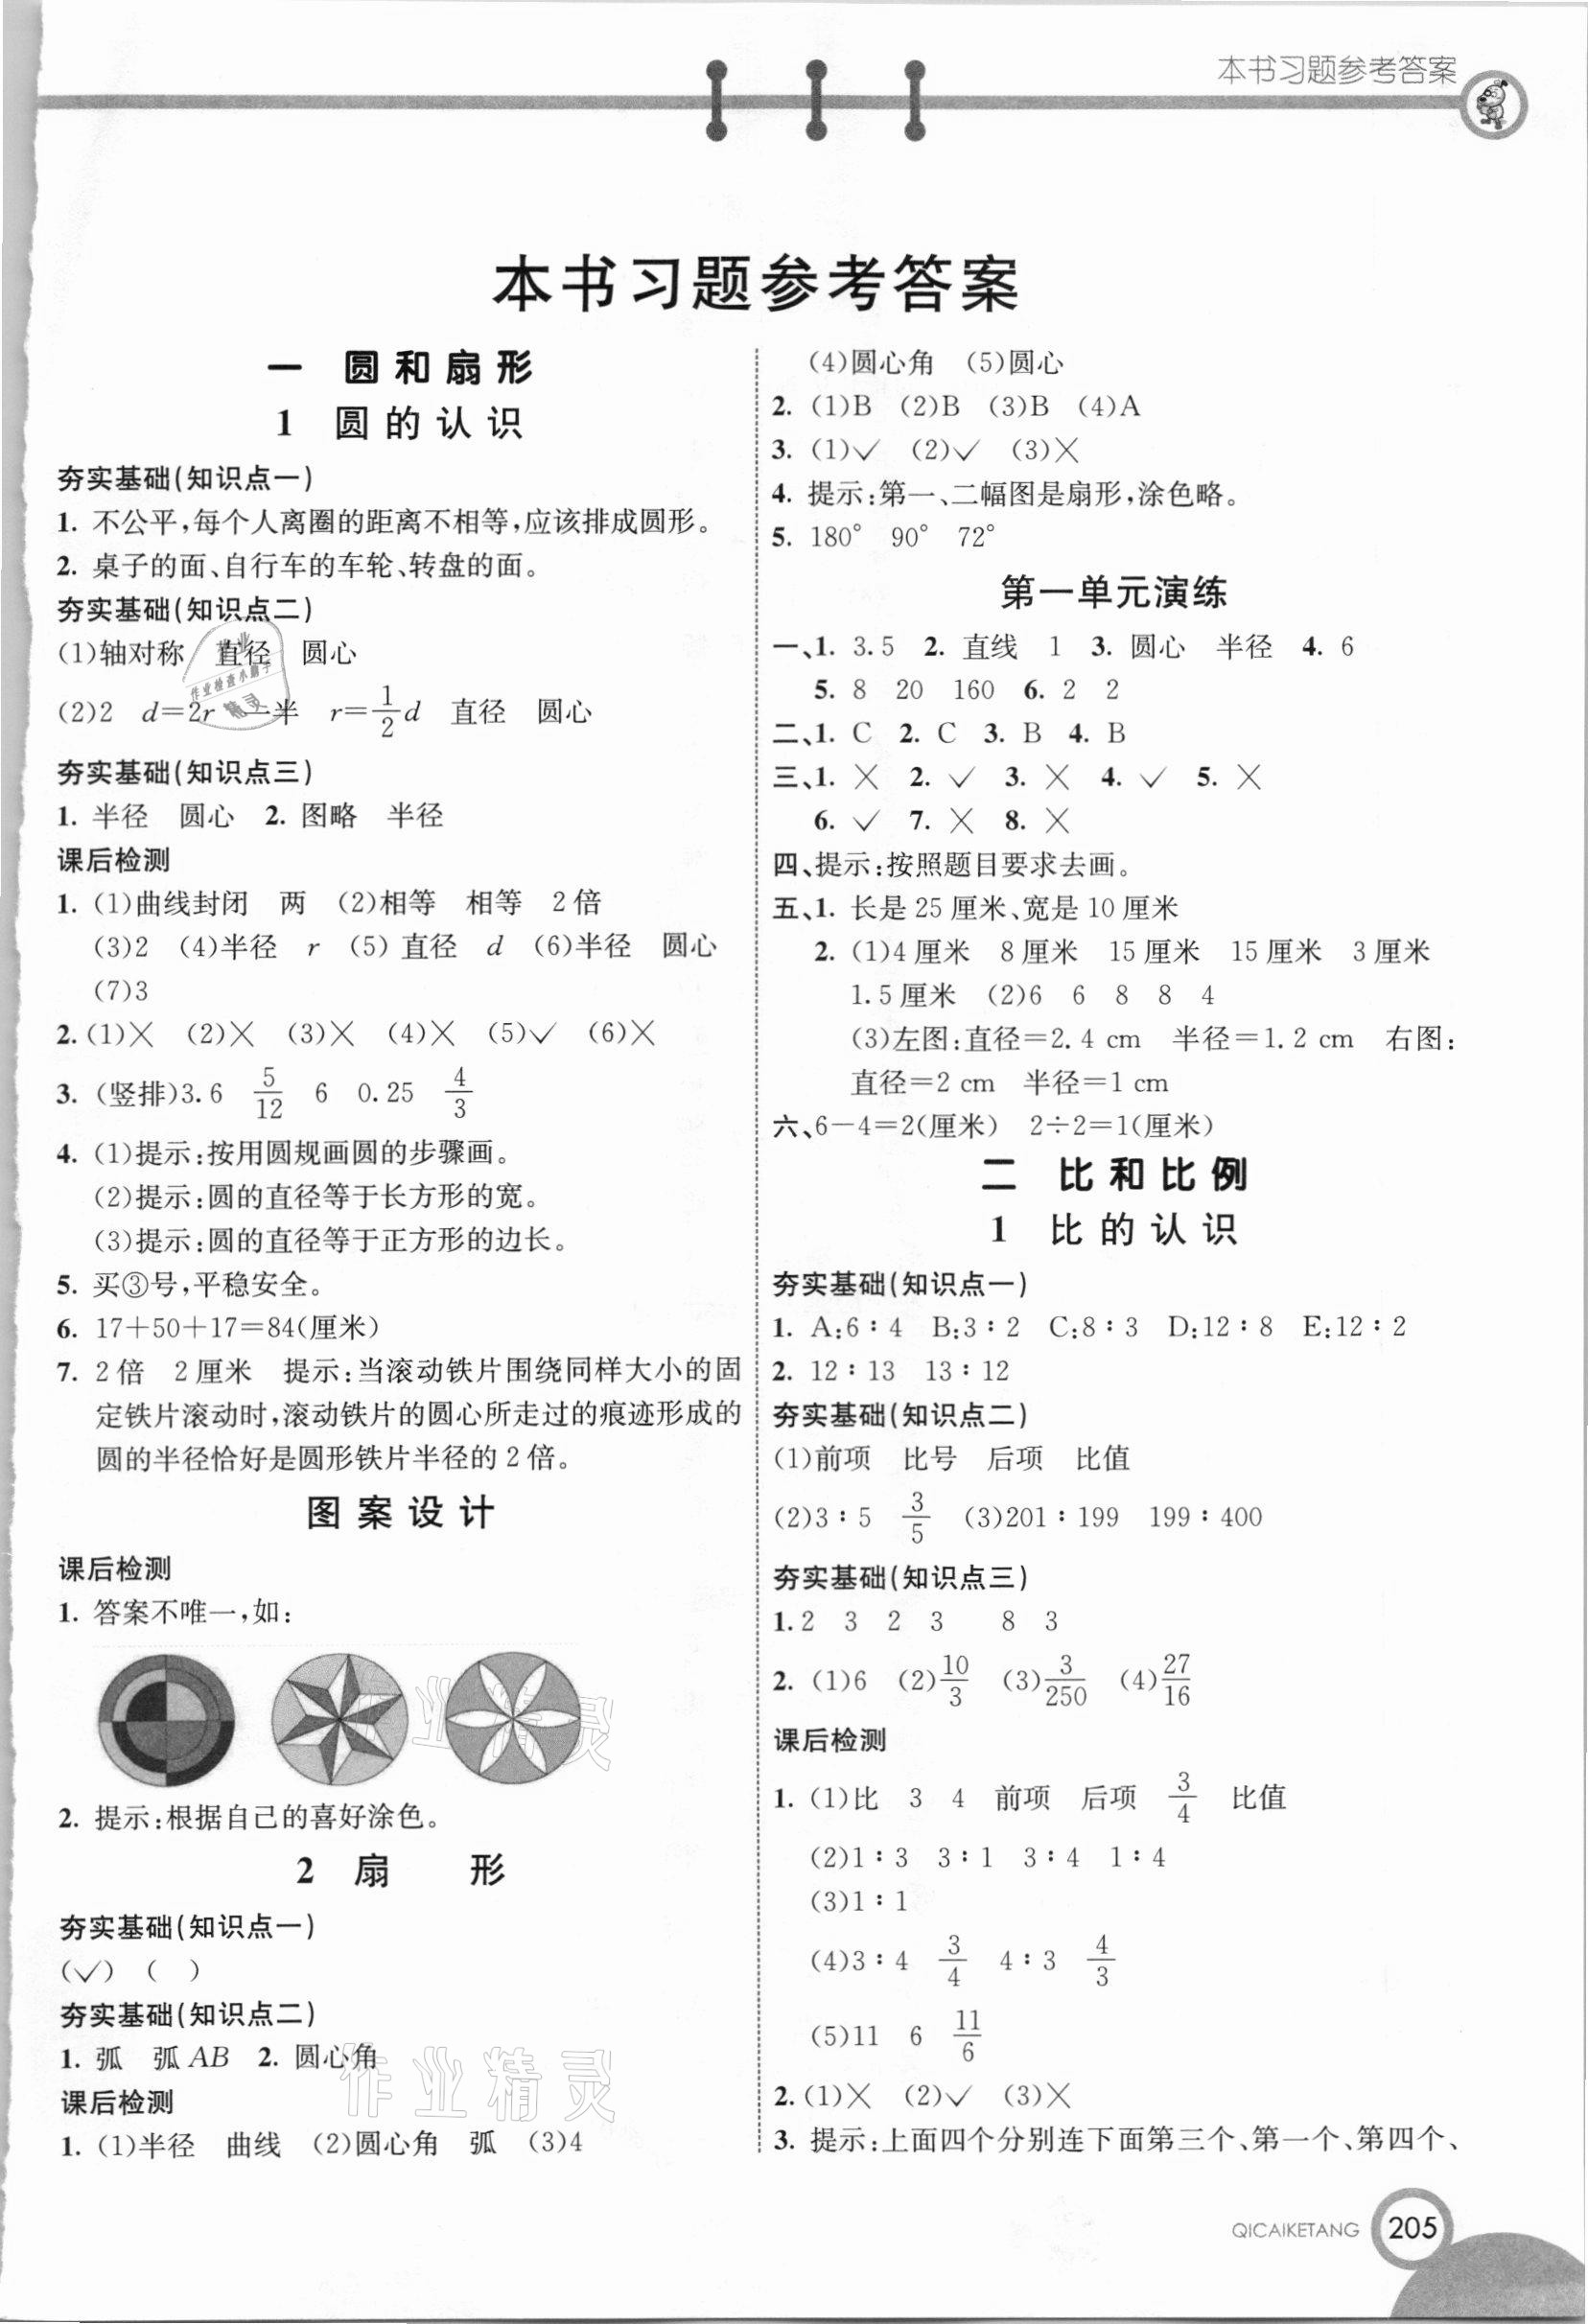 2020年七彩课堂六年级数学上册冀教版 第1页